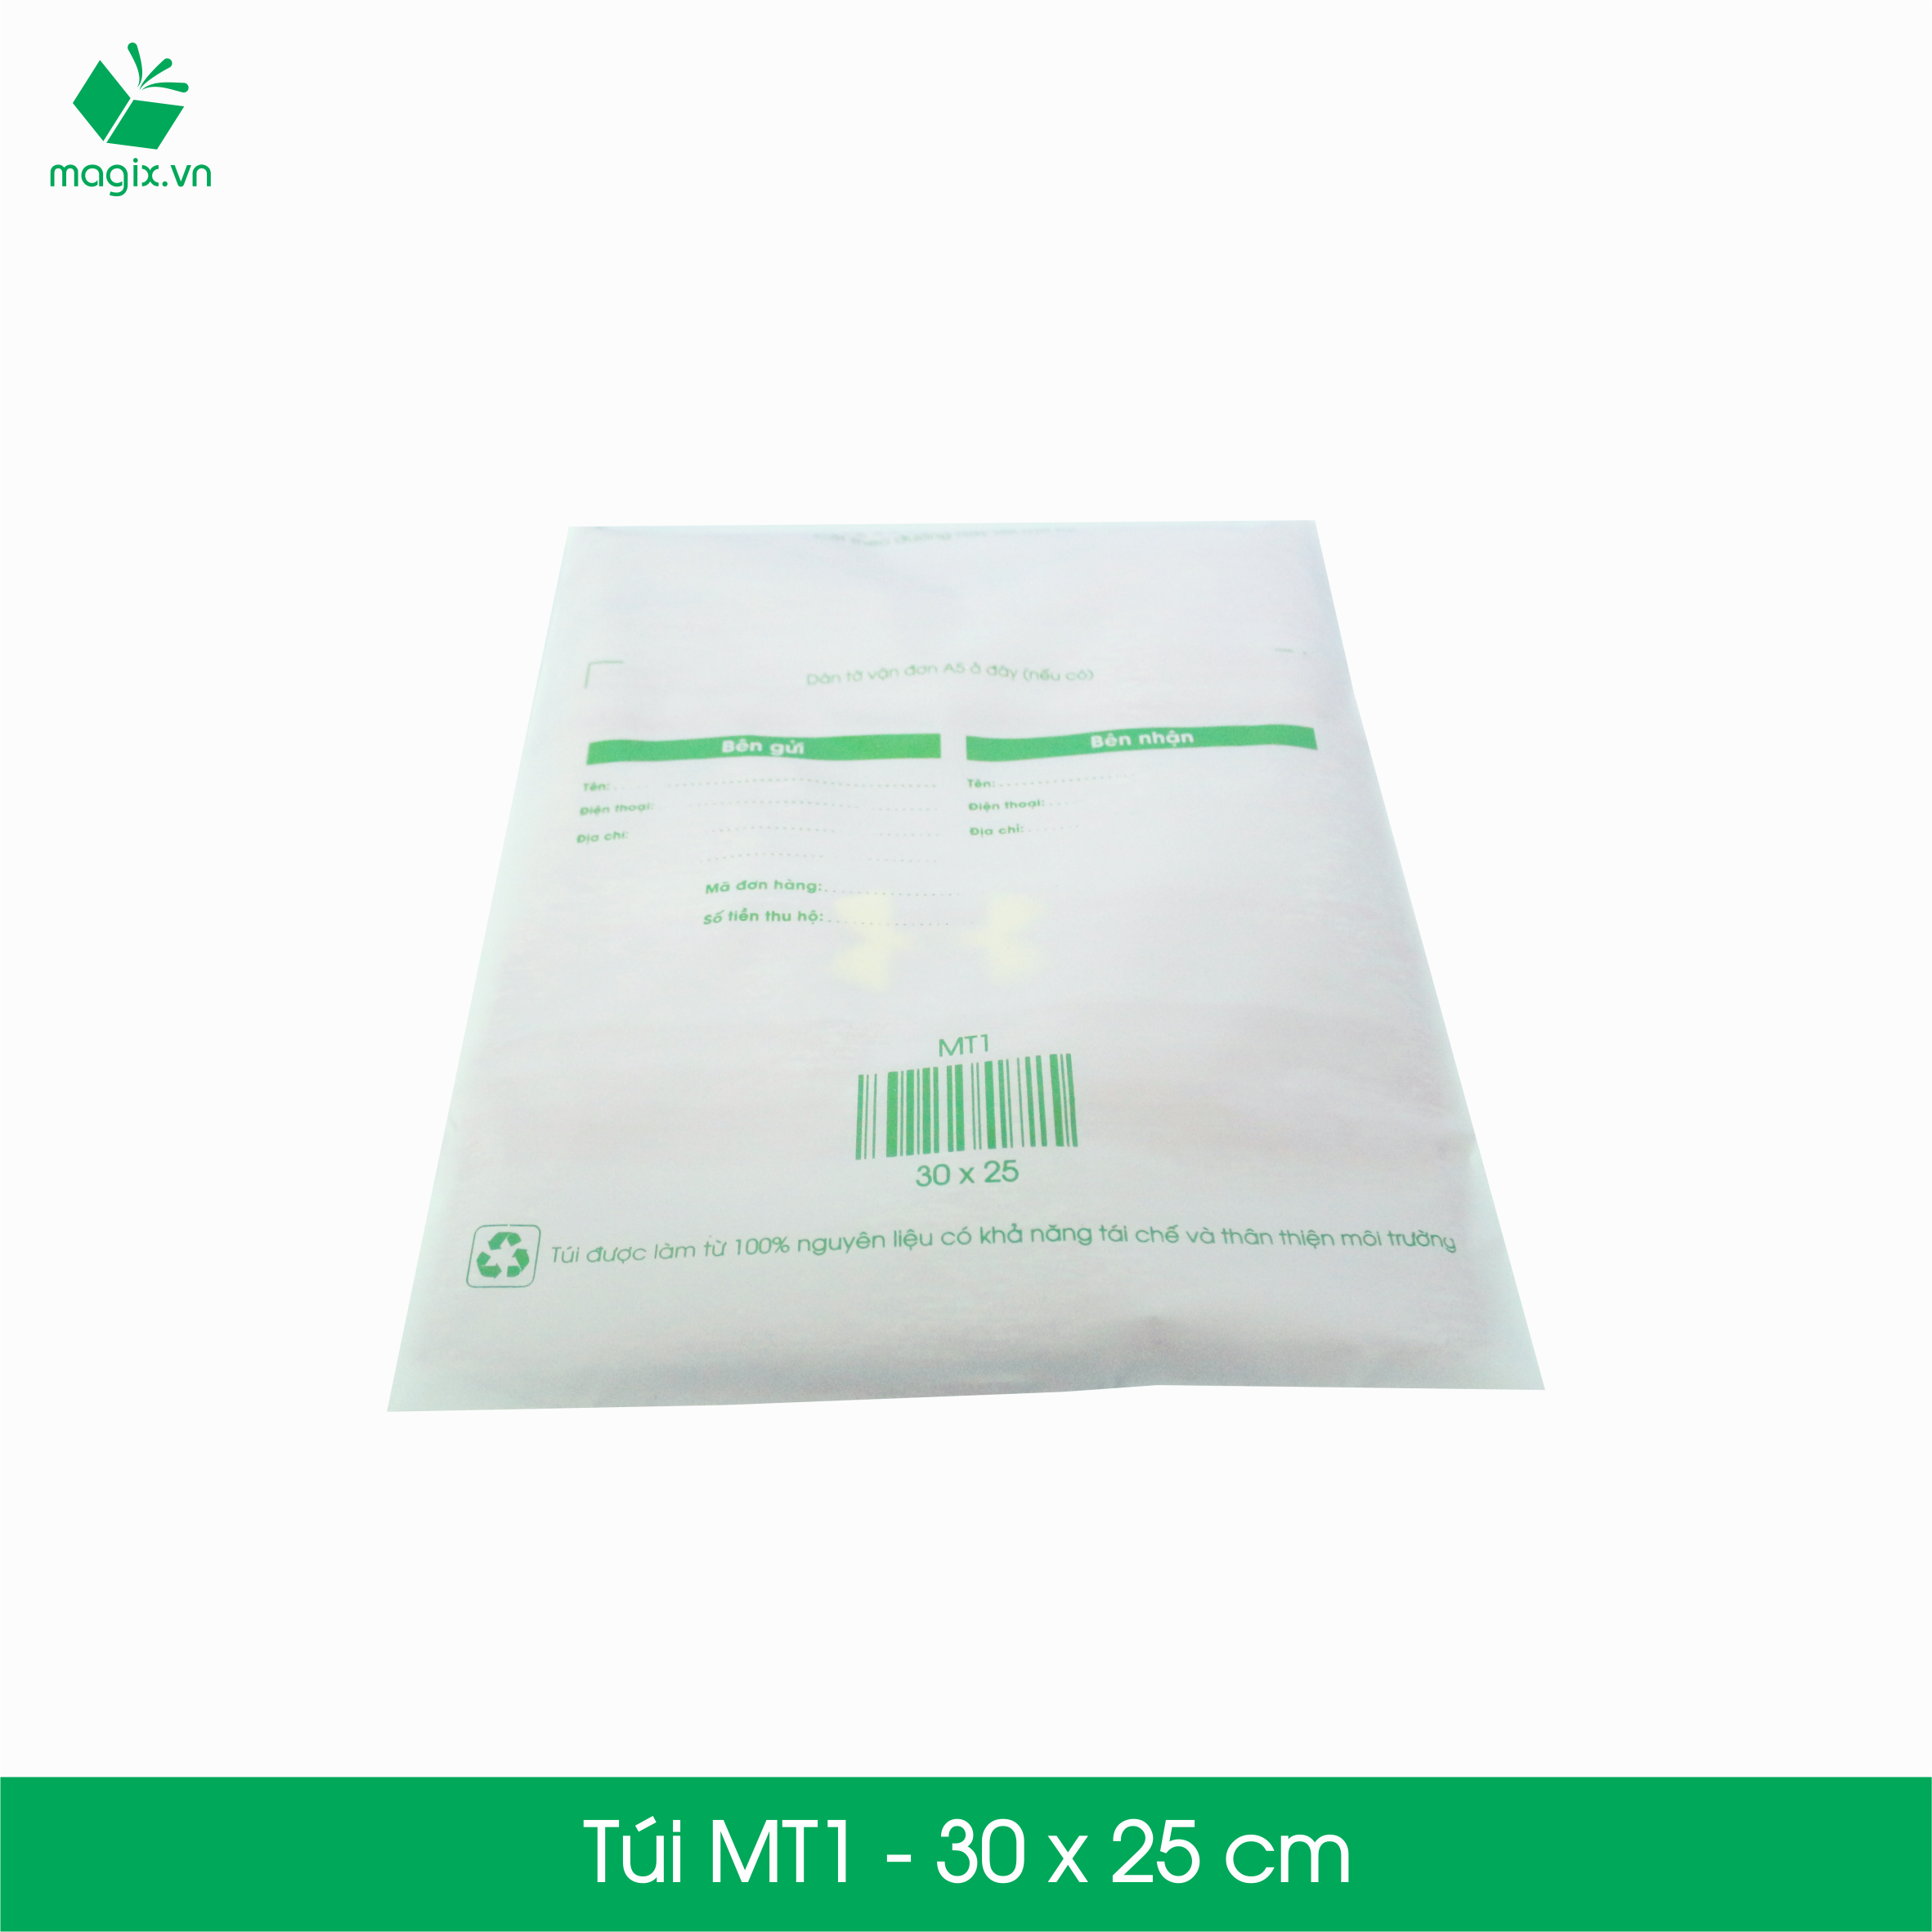 MT1 - 30x25 cm - 300 Túi nilon (tự phân hủy sinh học) đóng hàng